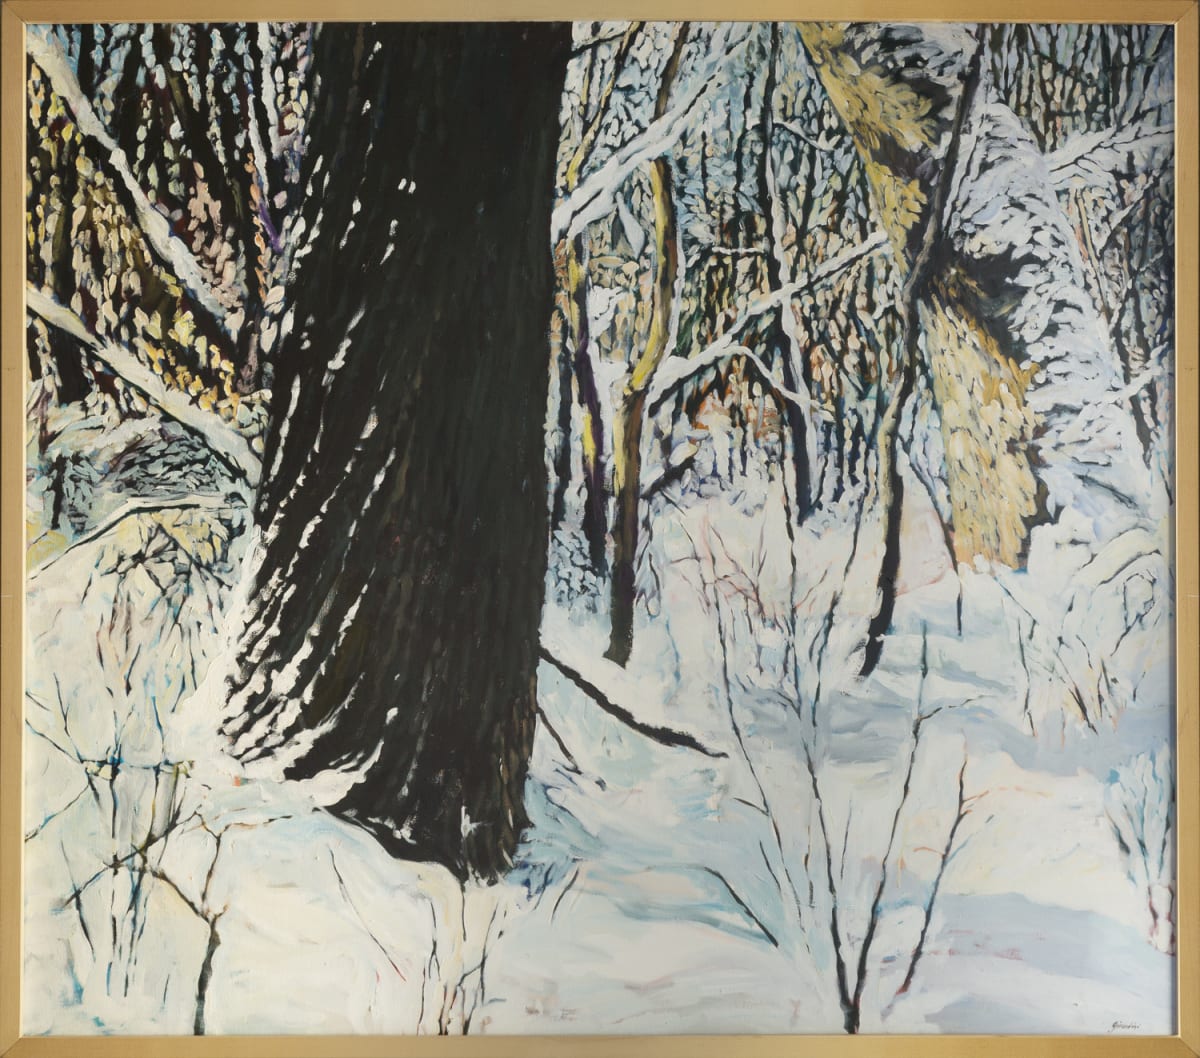 Black Oak White Snow by Julie and Ken Girardini 